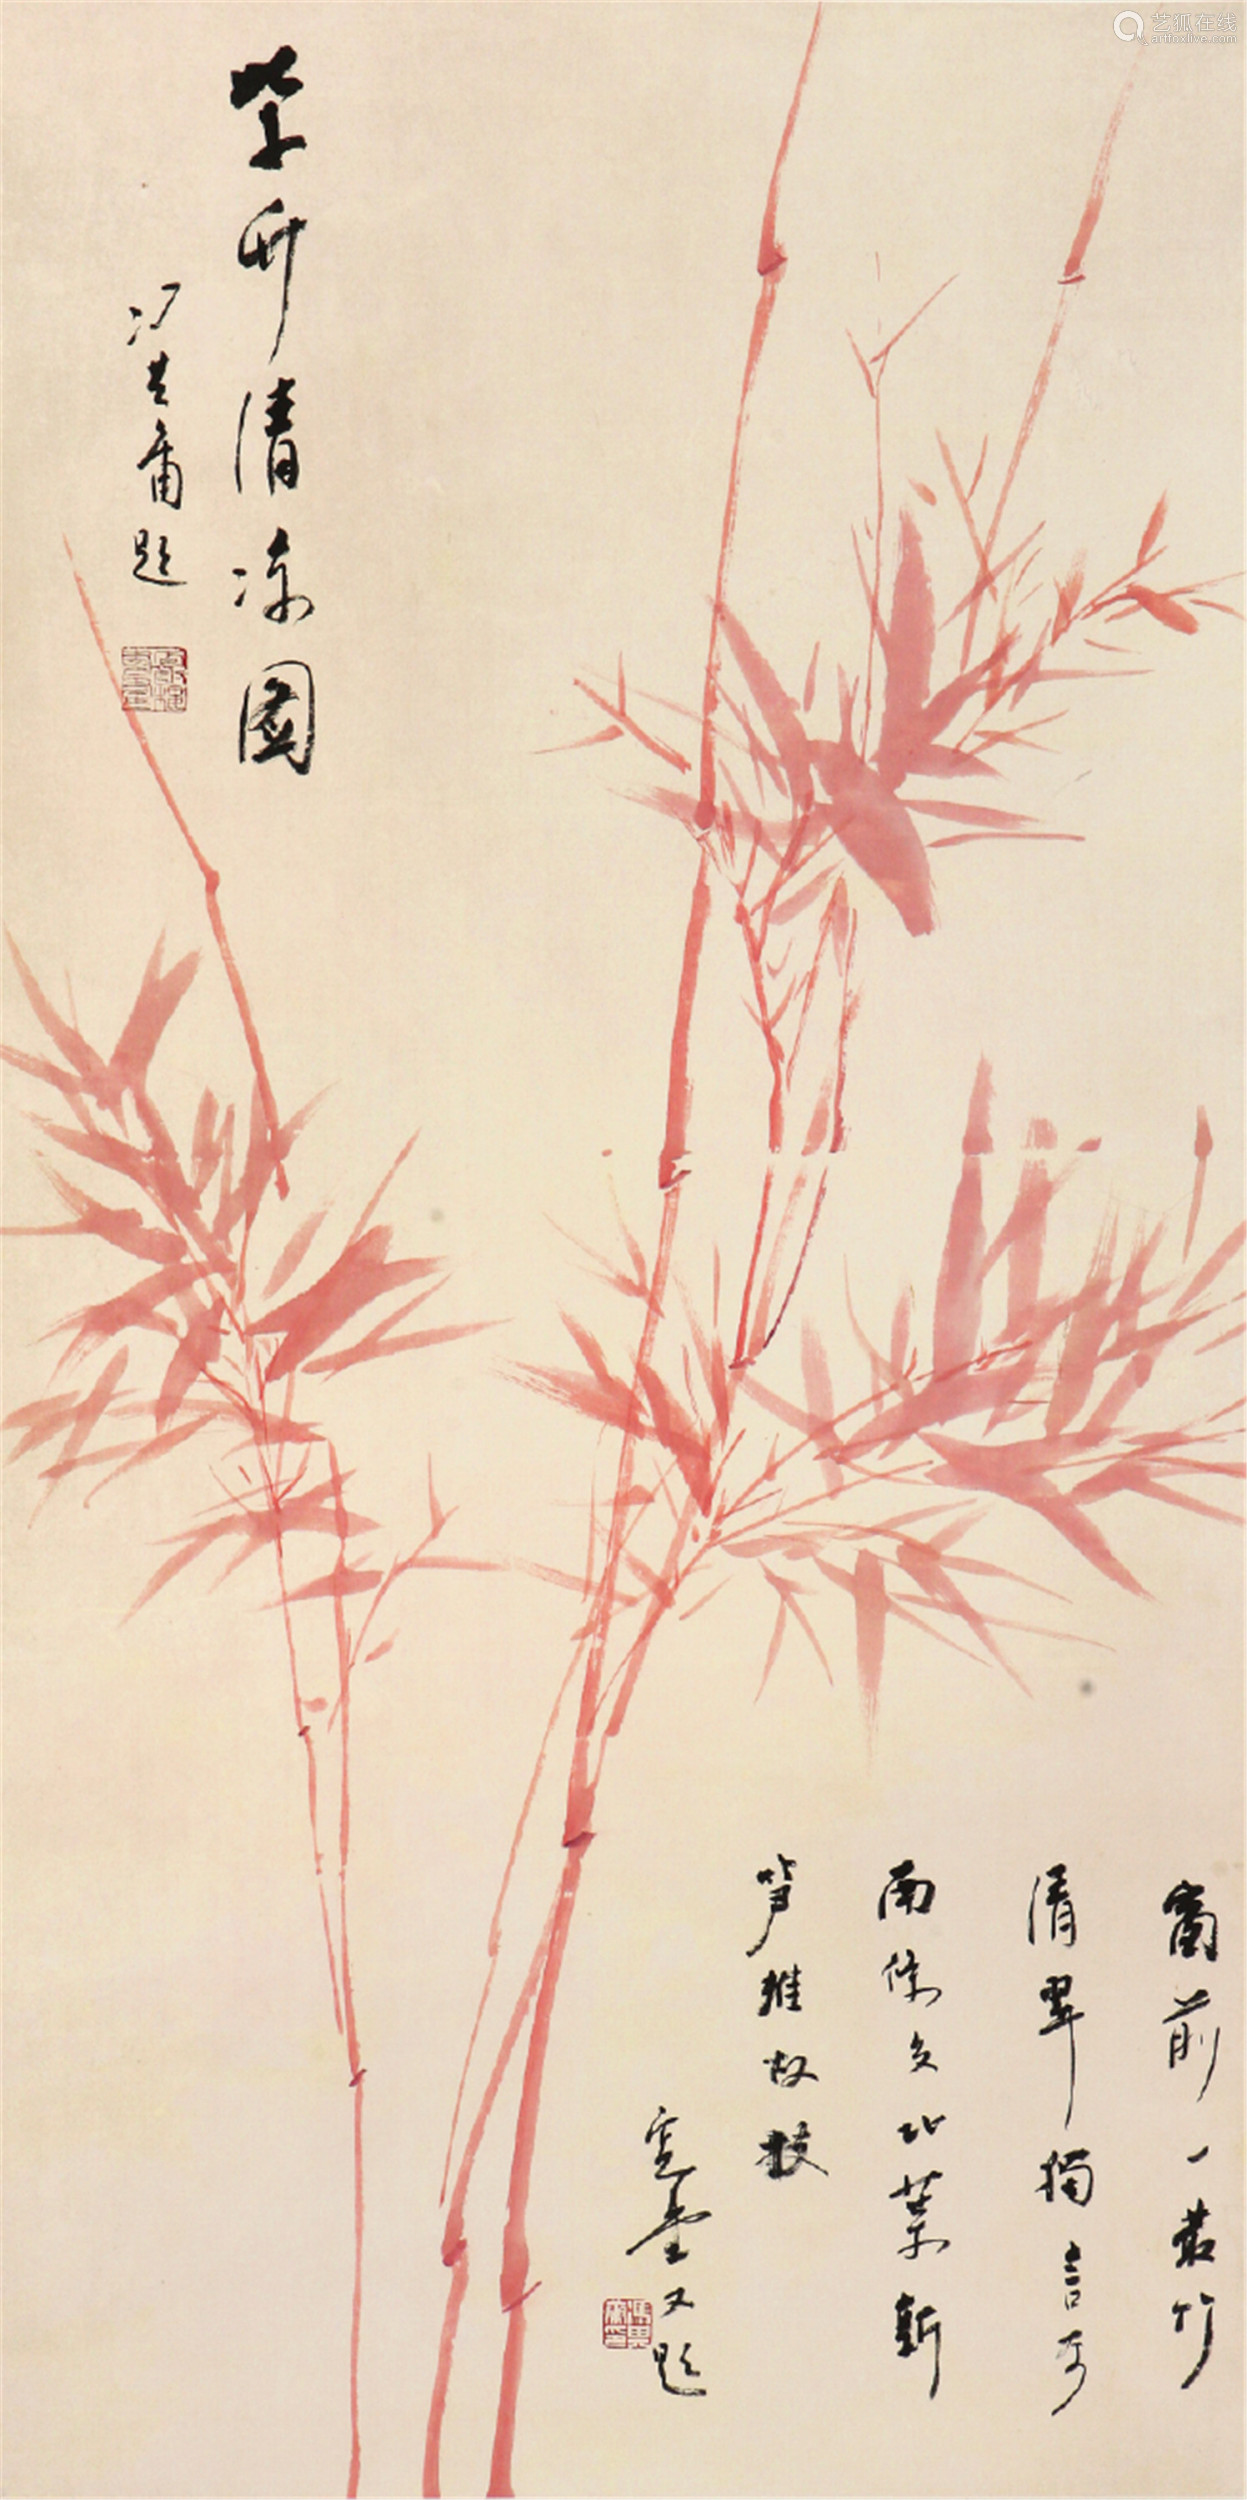 冯其庸19242017紫竹清凉图